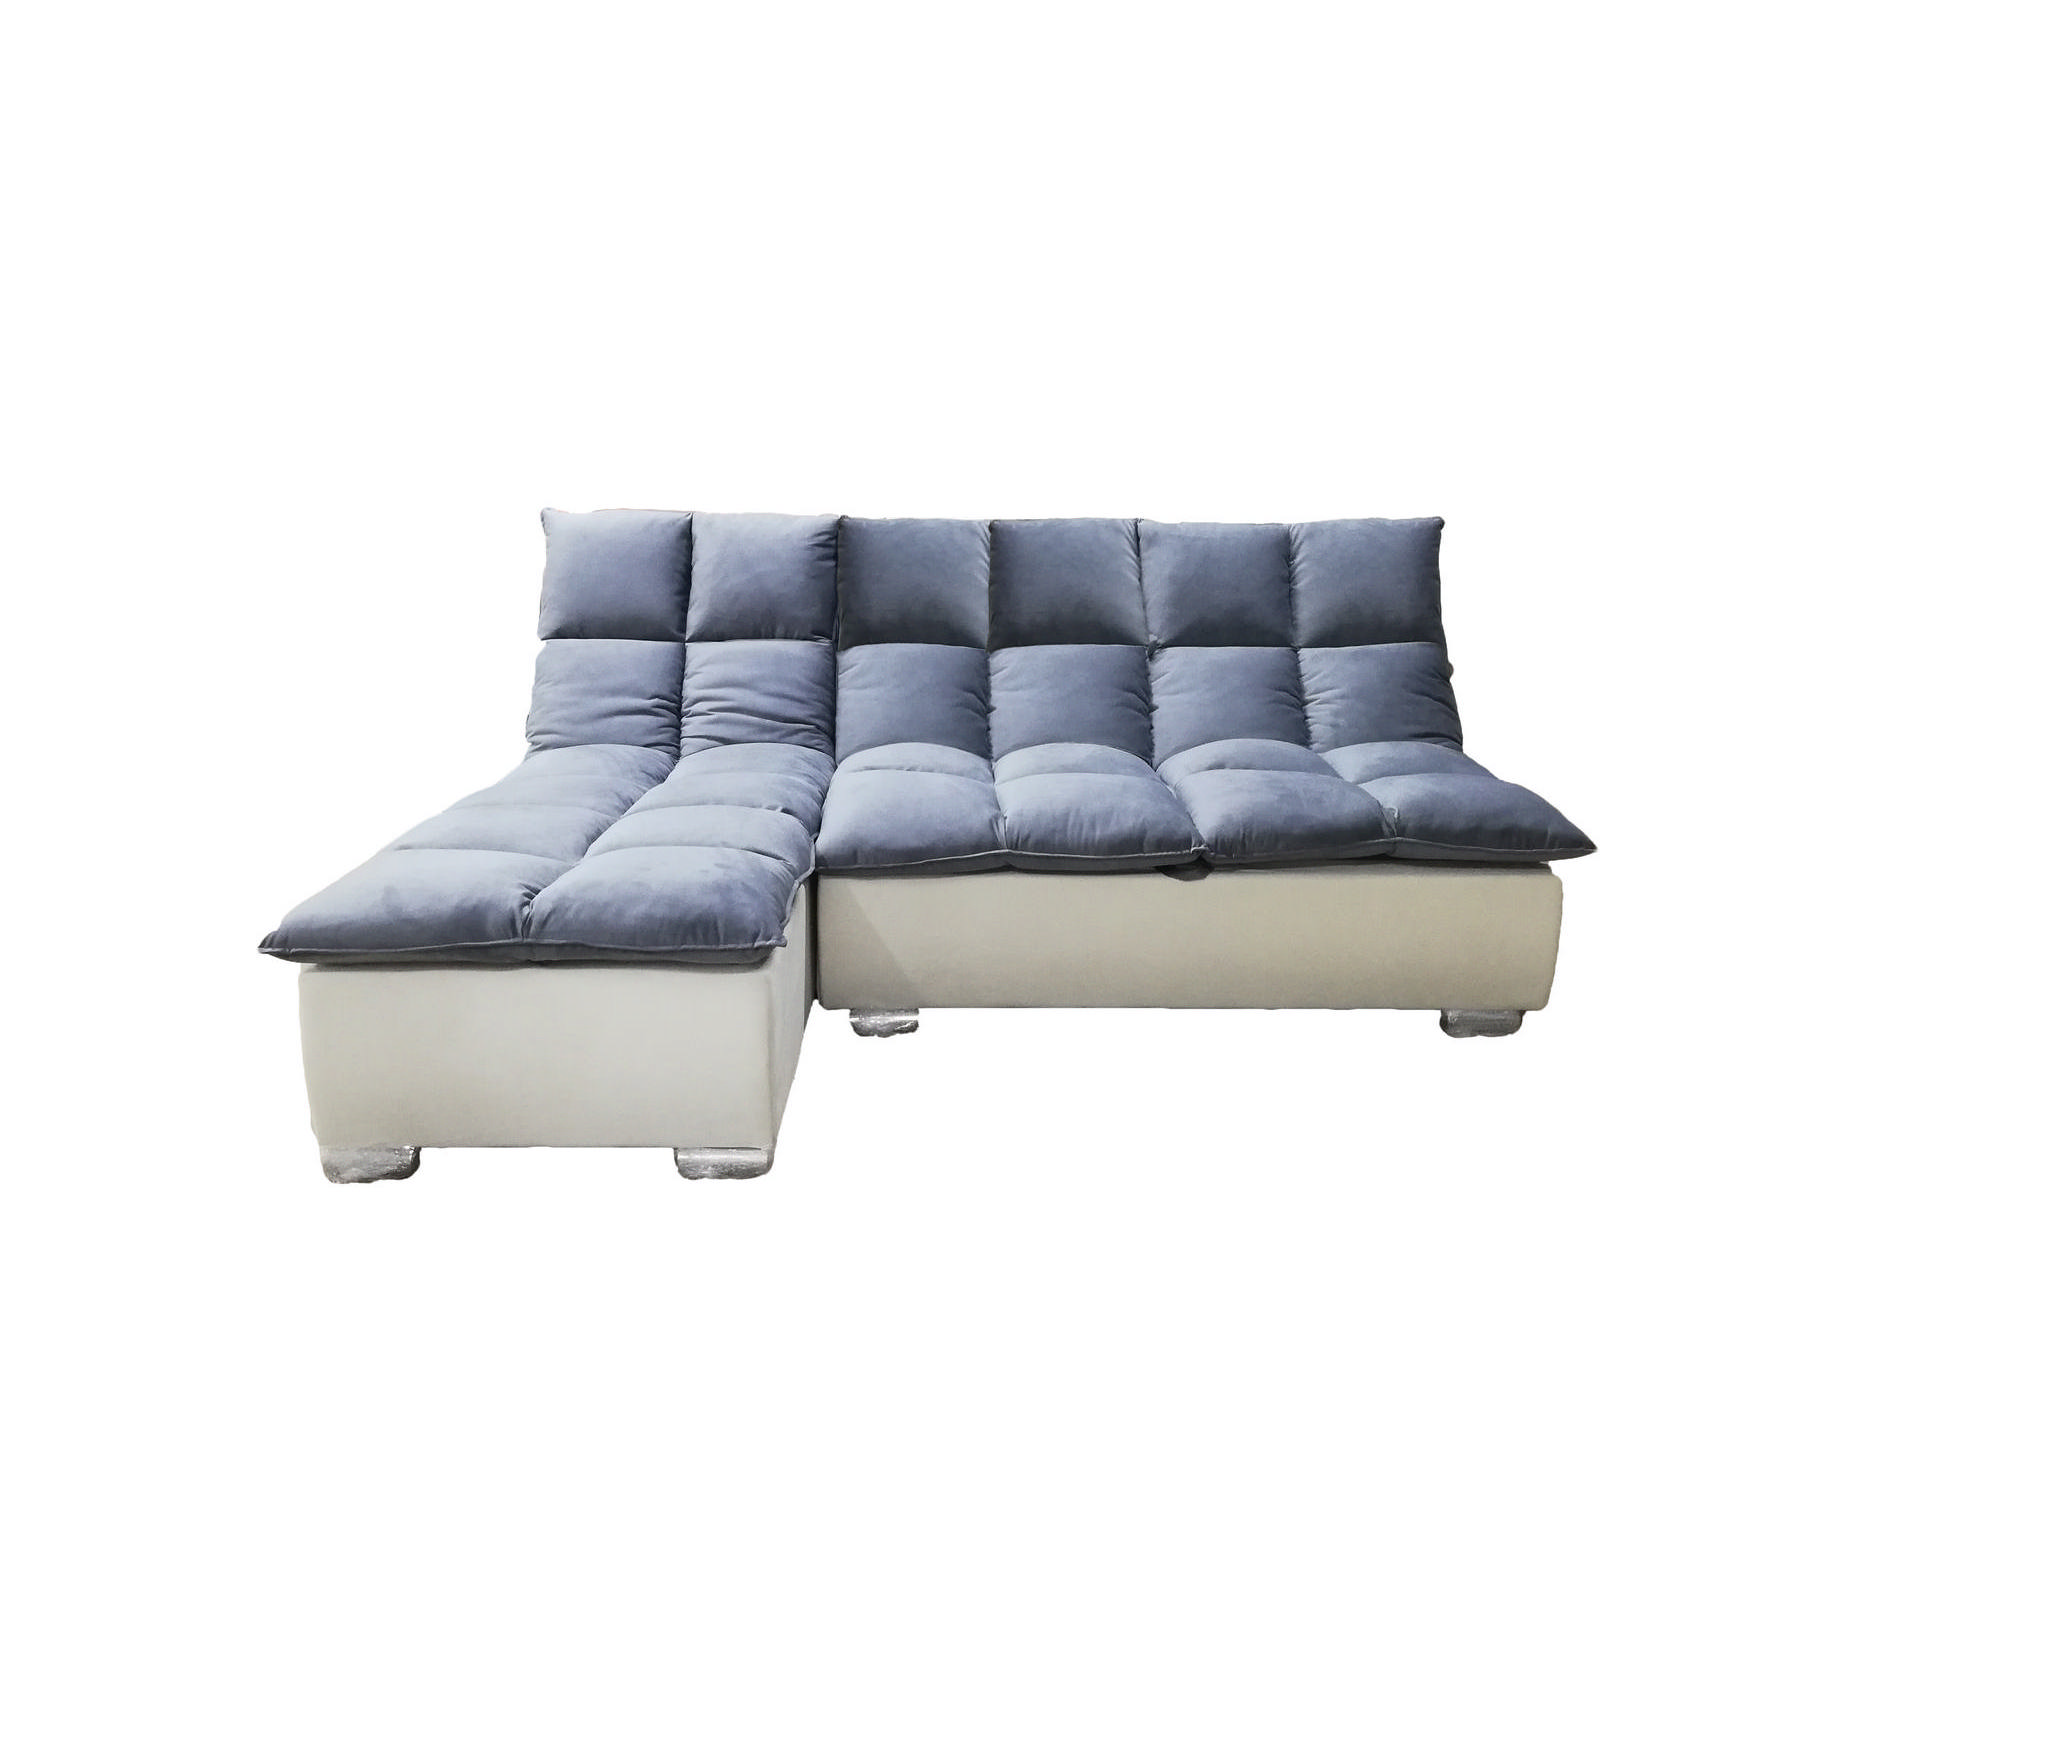 Секционный диван L-образной формы с двусторонней оттоманкой для гостиной, бежевого цвета